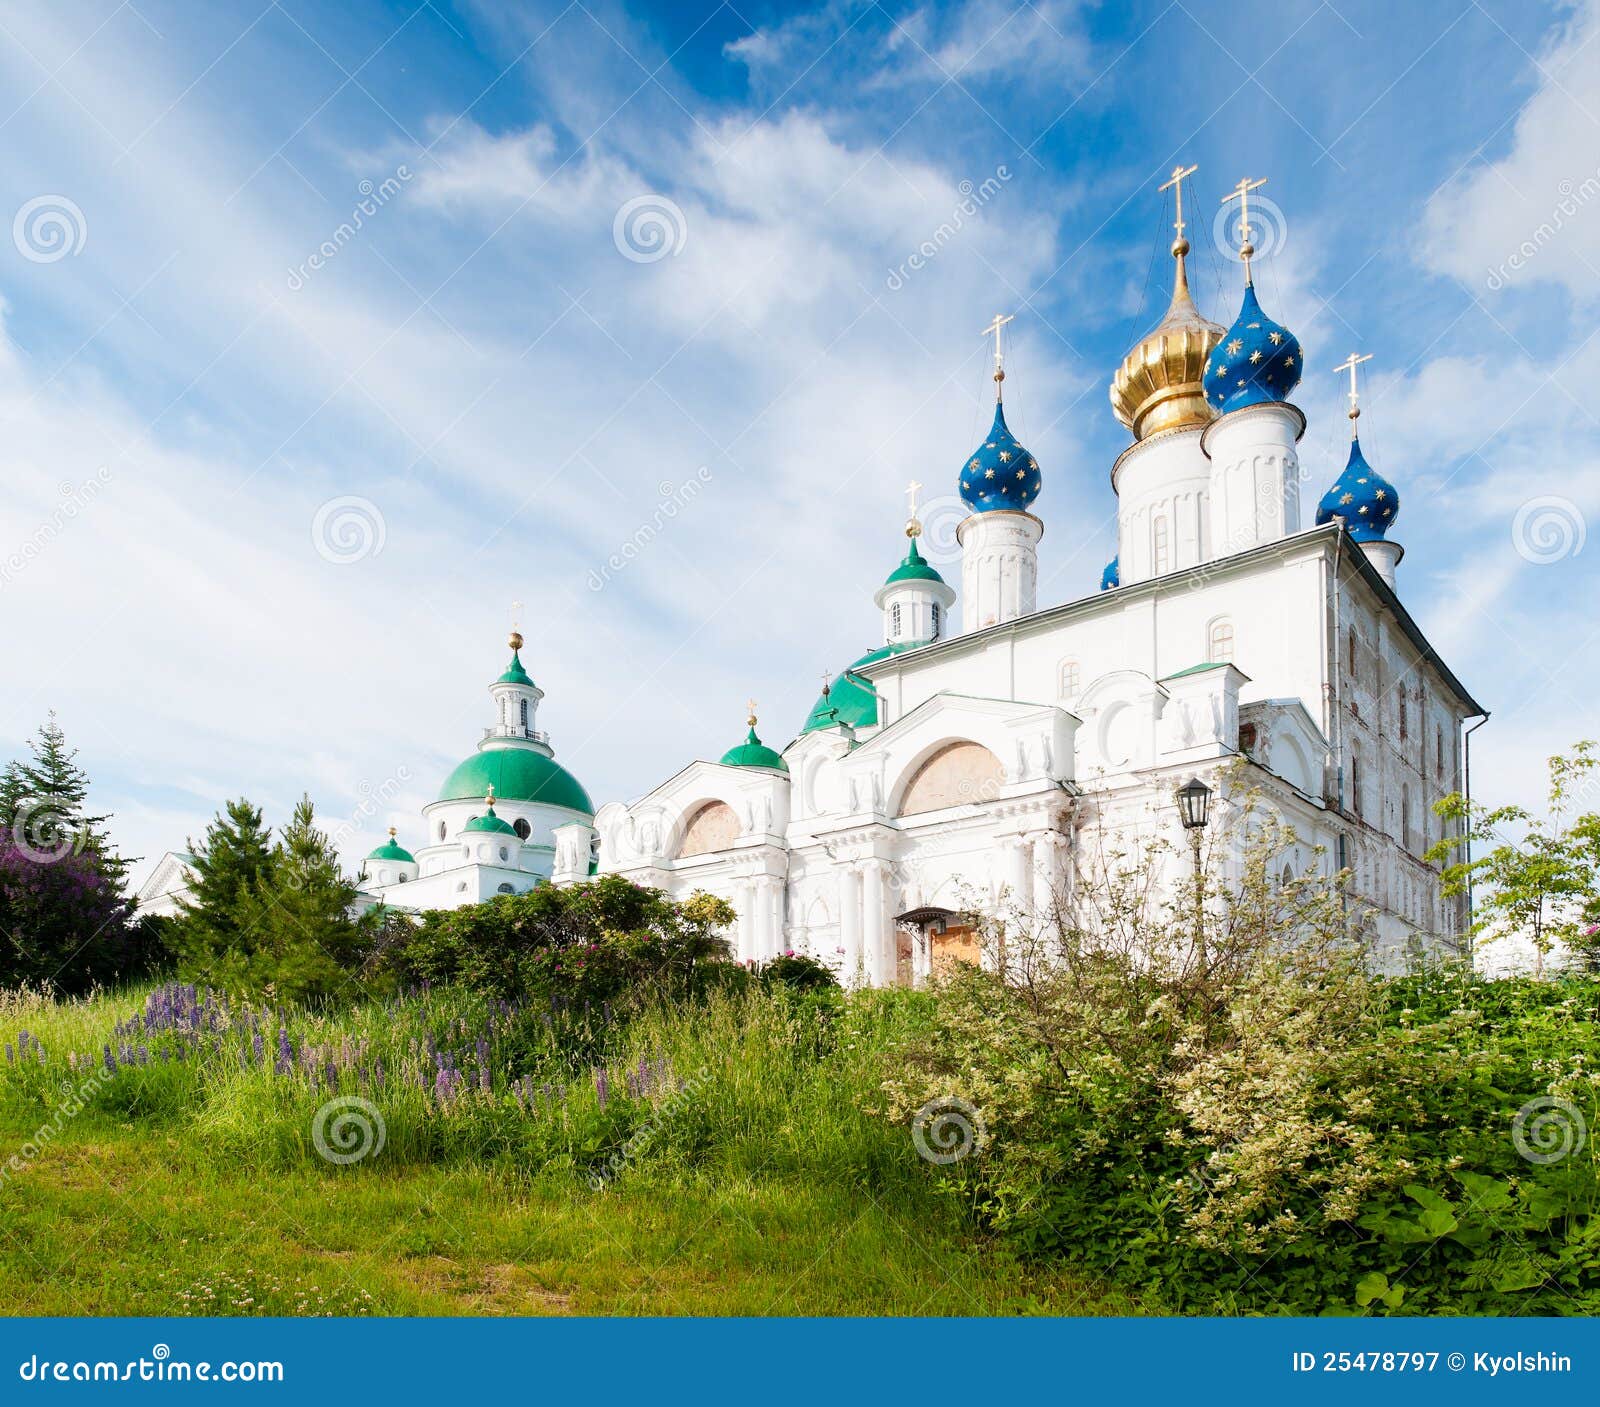 spaso-jakovlevskij monastery in rostov, russia.